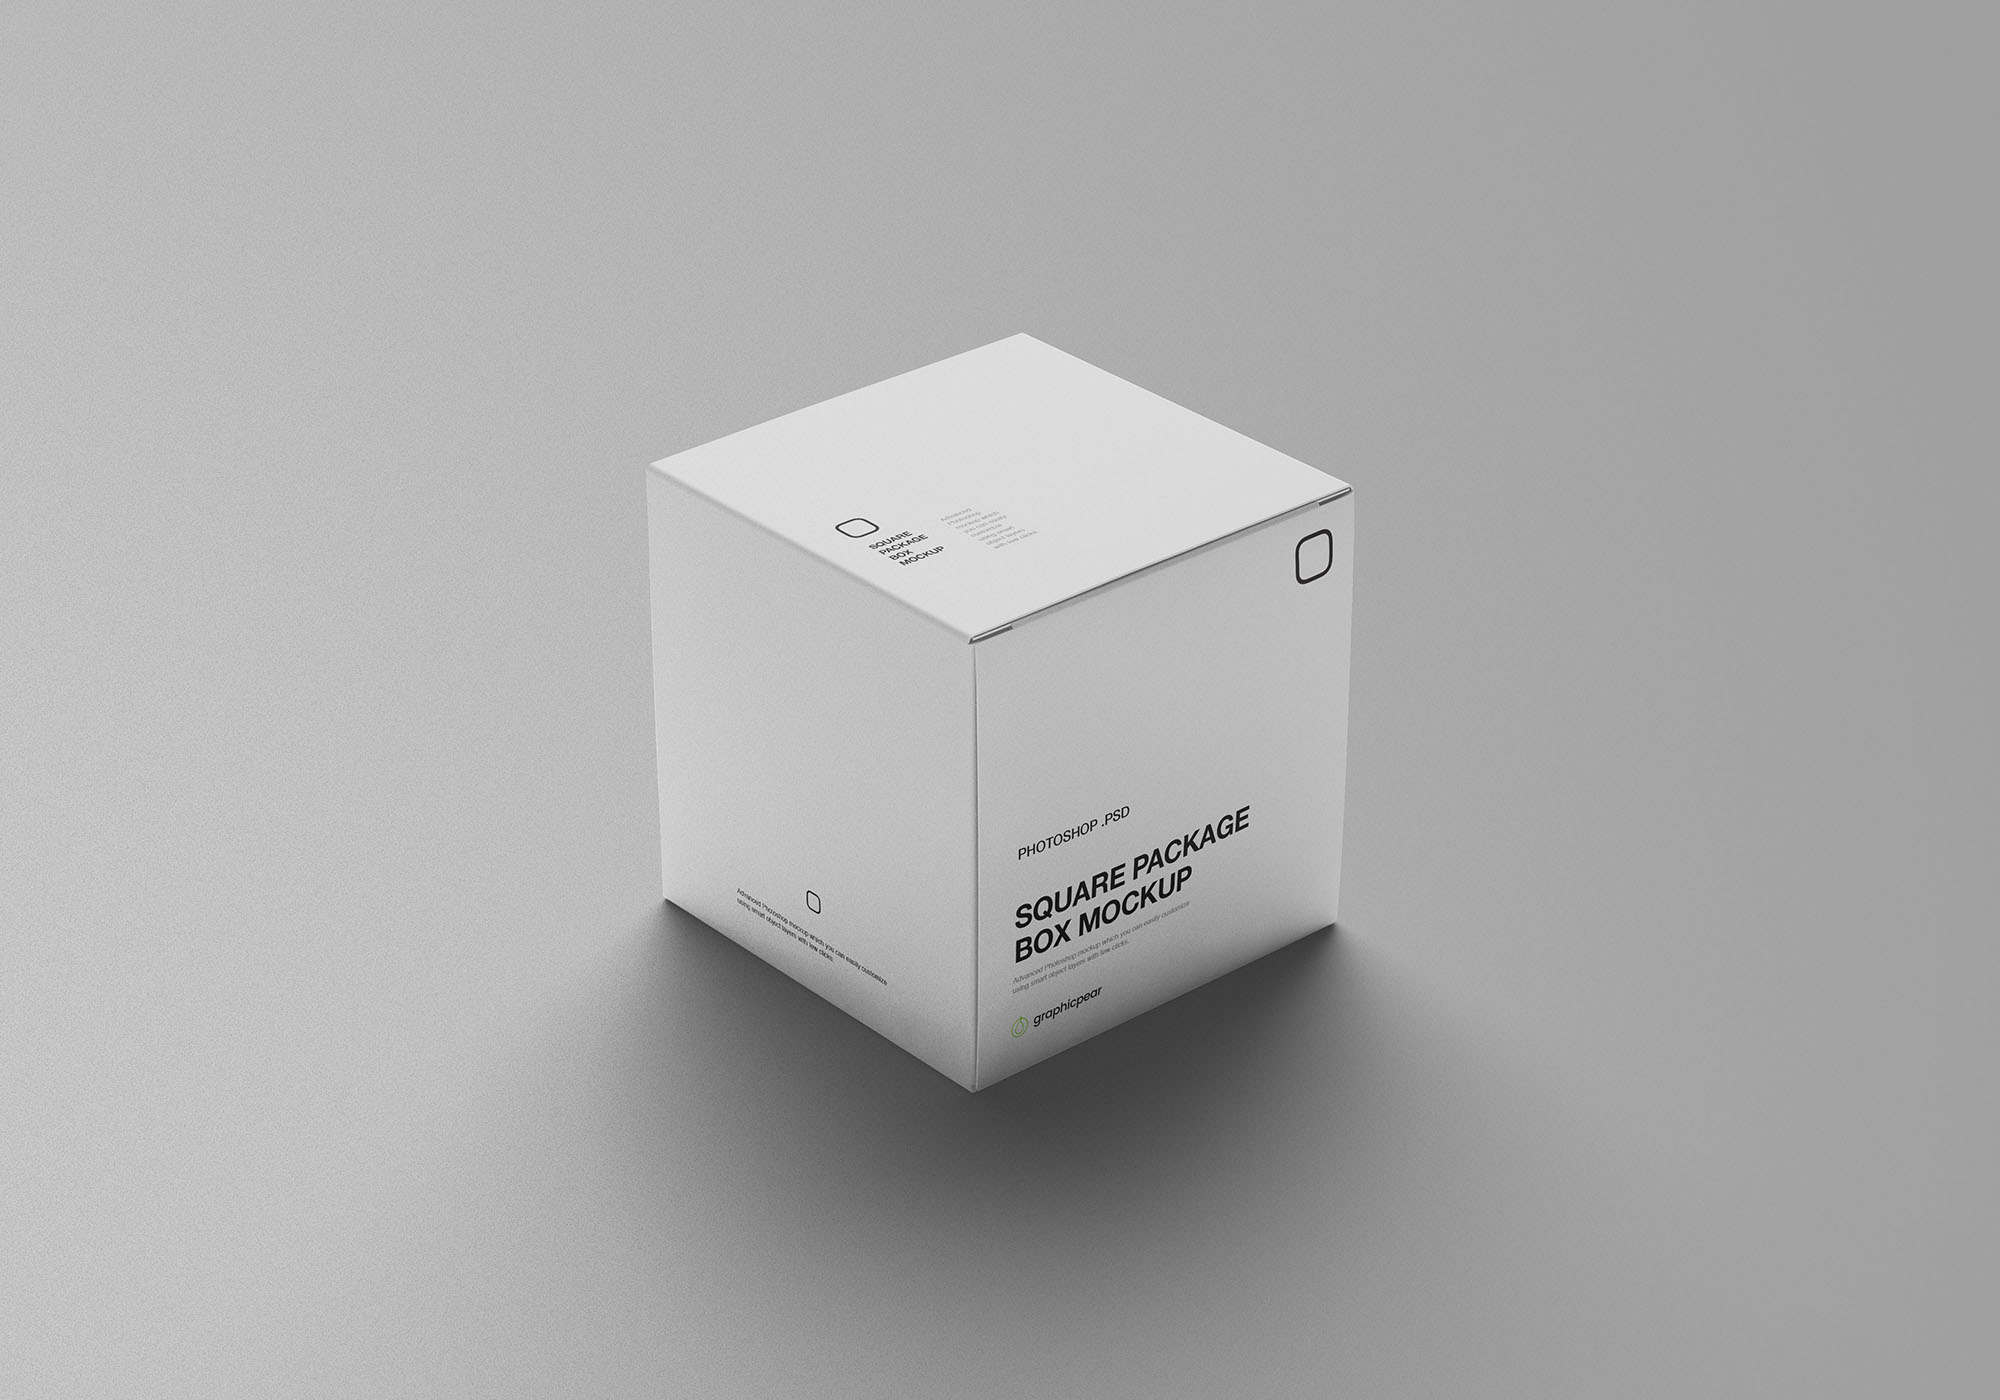 方形产品包装设计提案展示样机PSD智能贴图模板 Square Package Box Mockup插图3